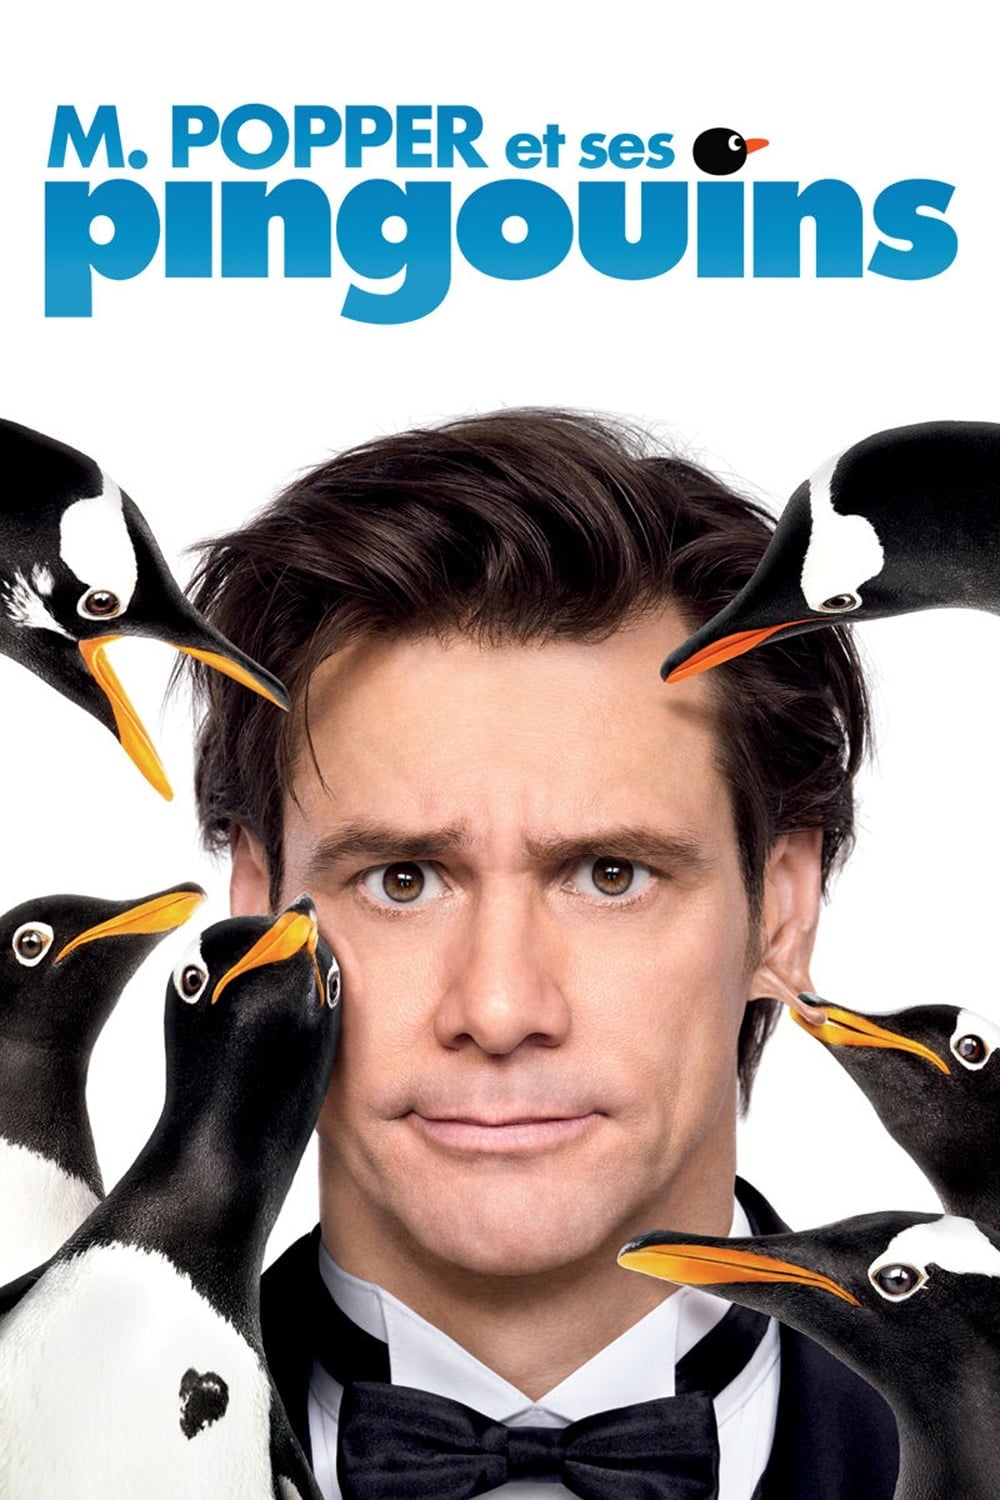 M. Popper et ses pingouins est-il disponible sur Netflix ou autre ?